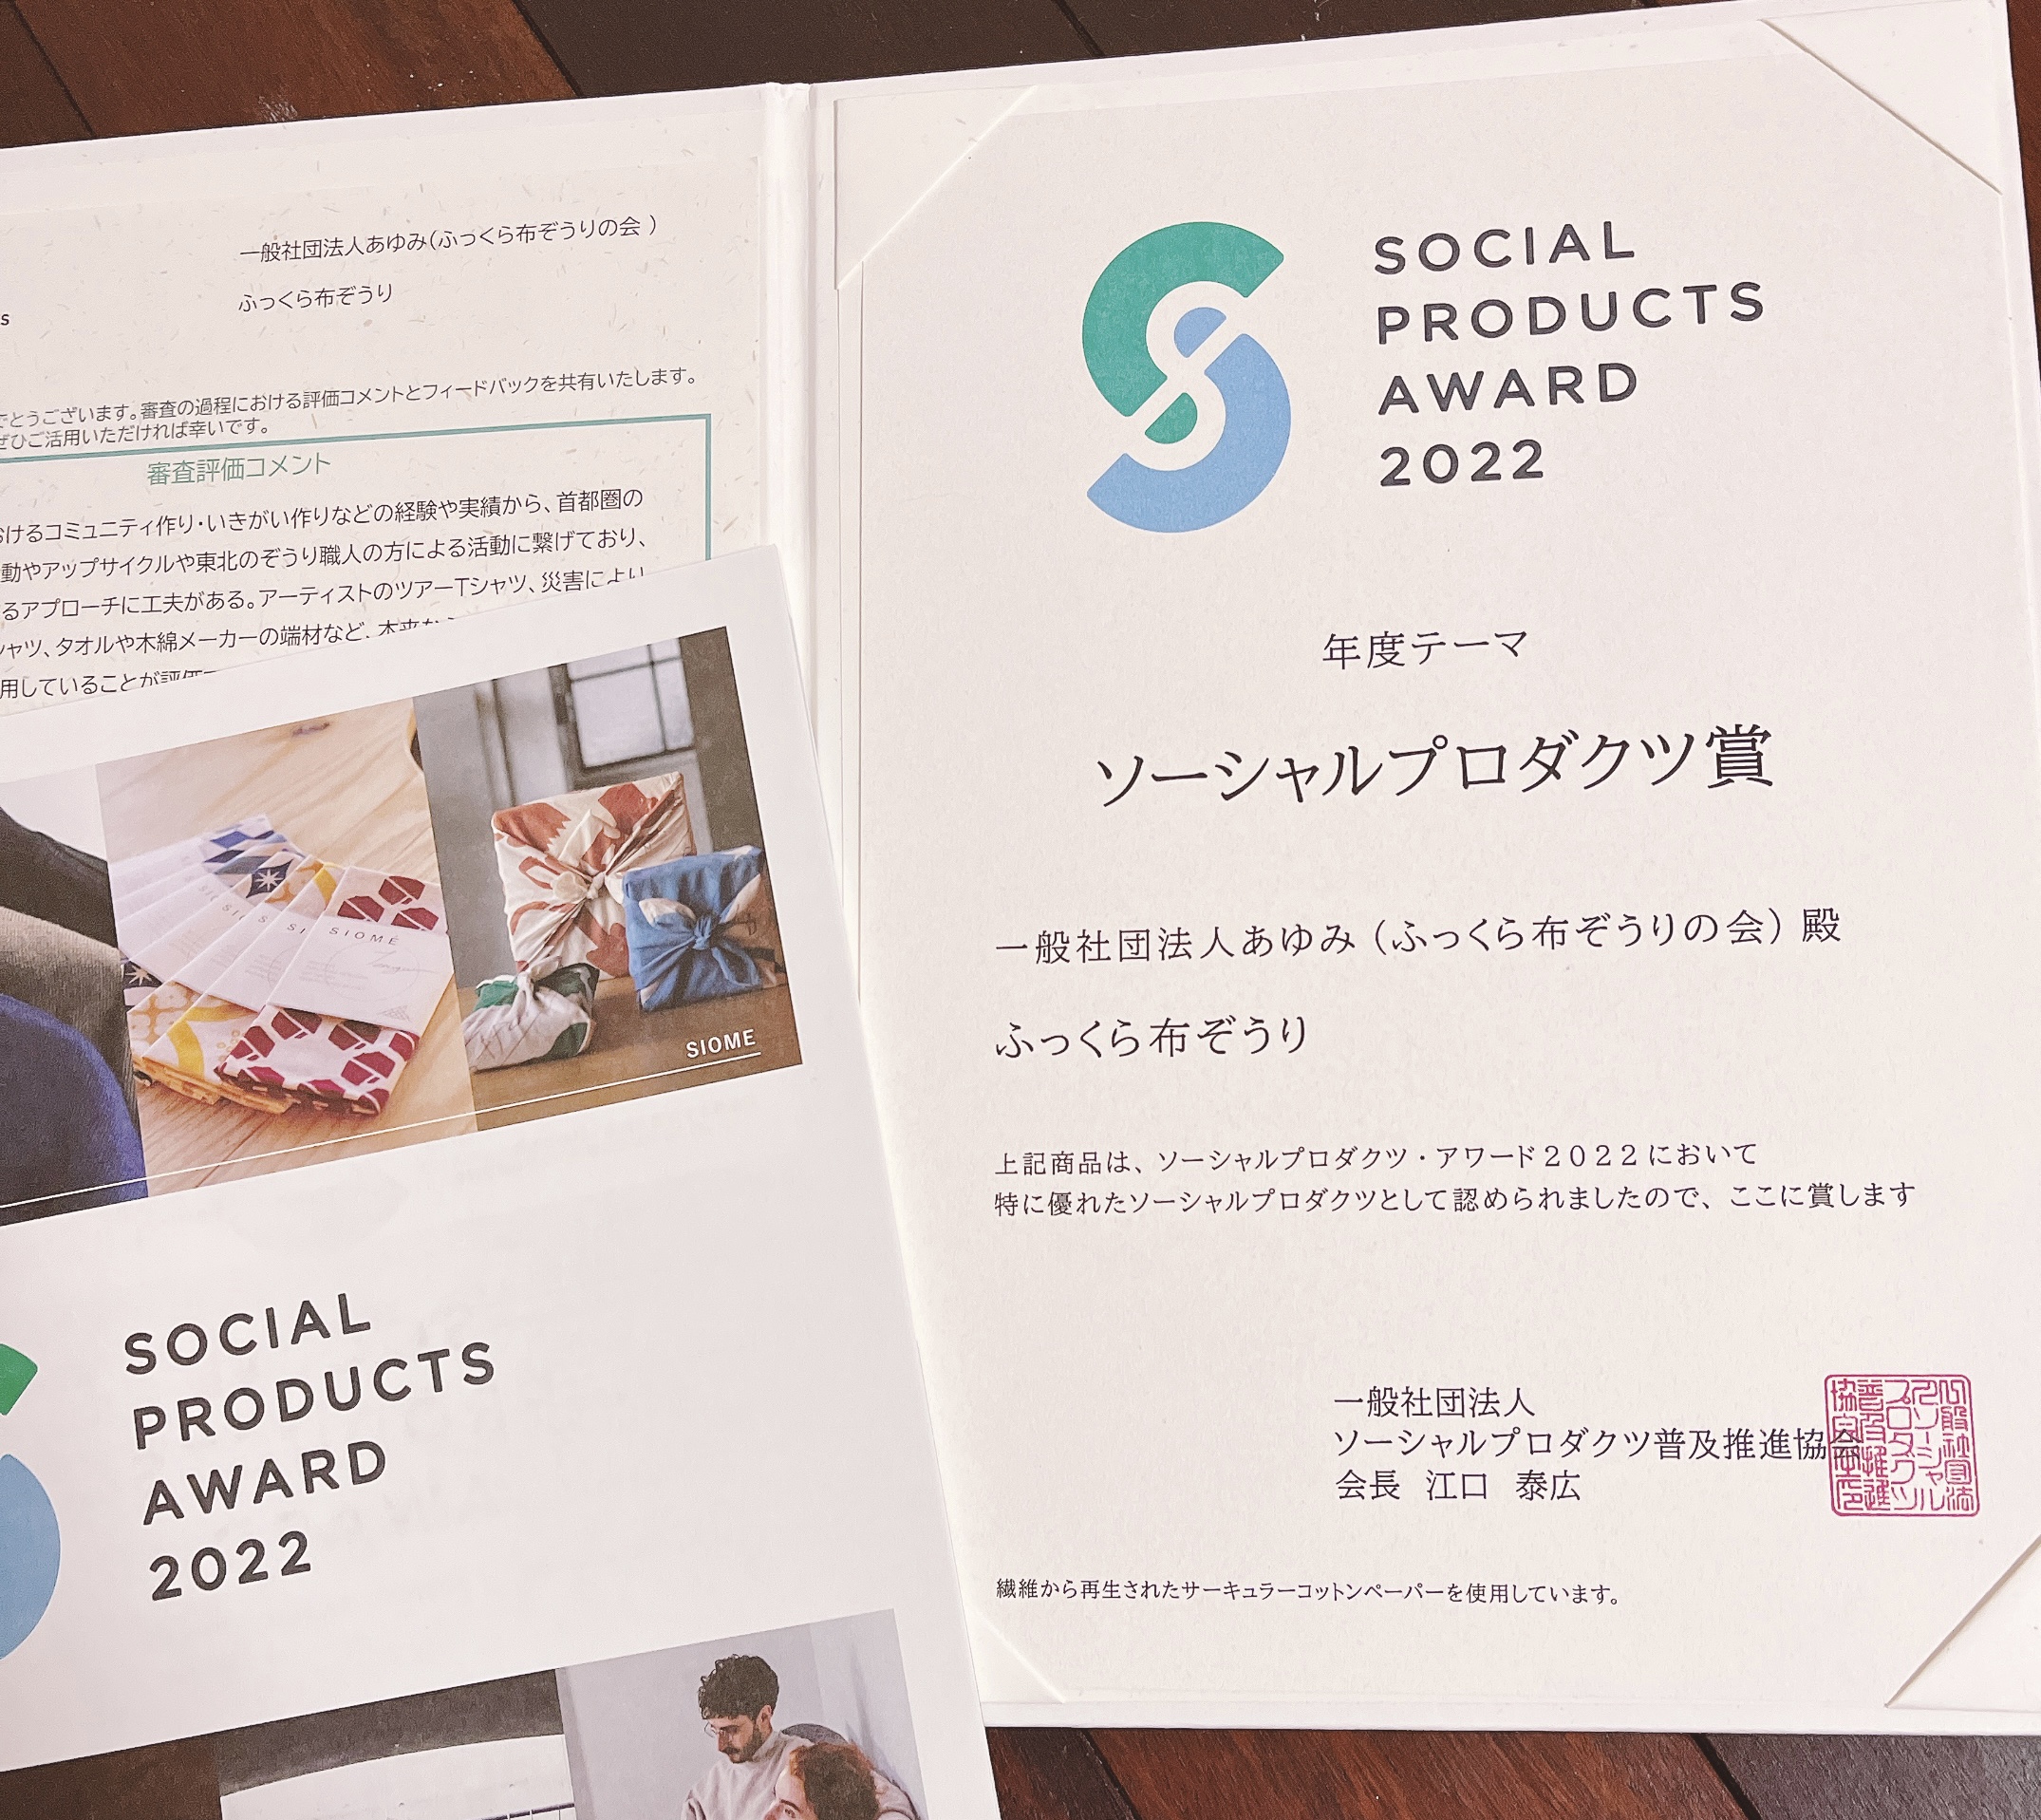 ふっくら布ぞうり SOCIAL PRODUCTS AWARD 2022「ソーシャルプロダクツ賞」受賞